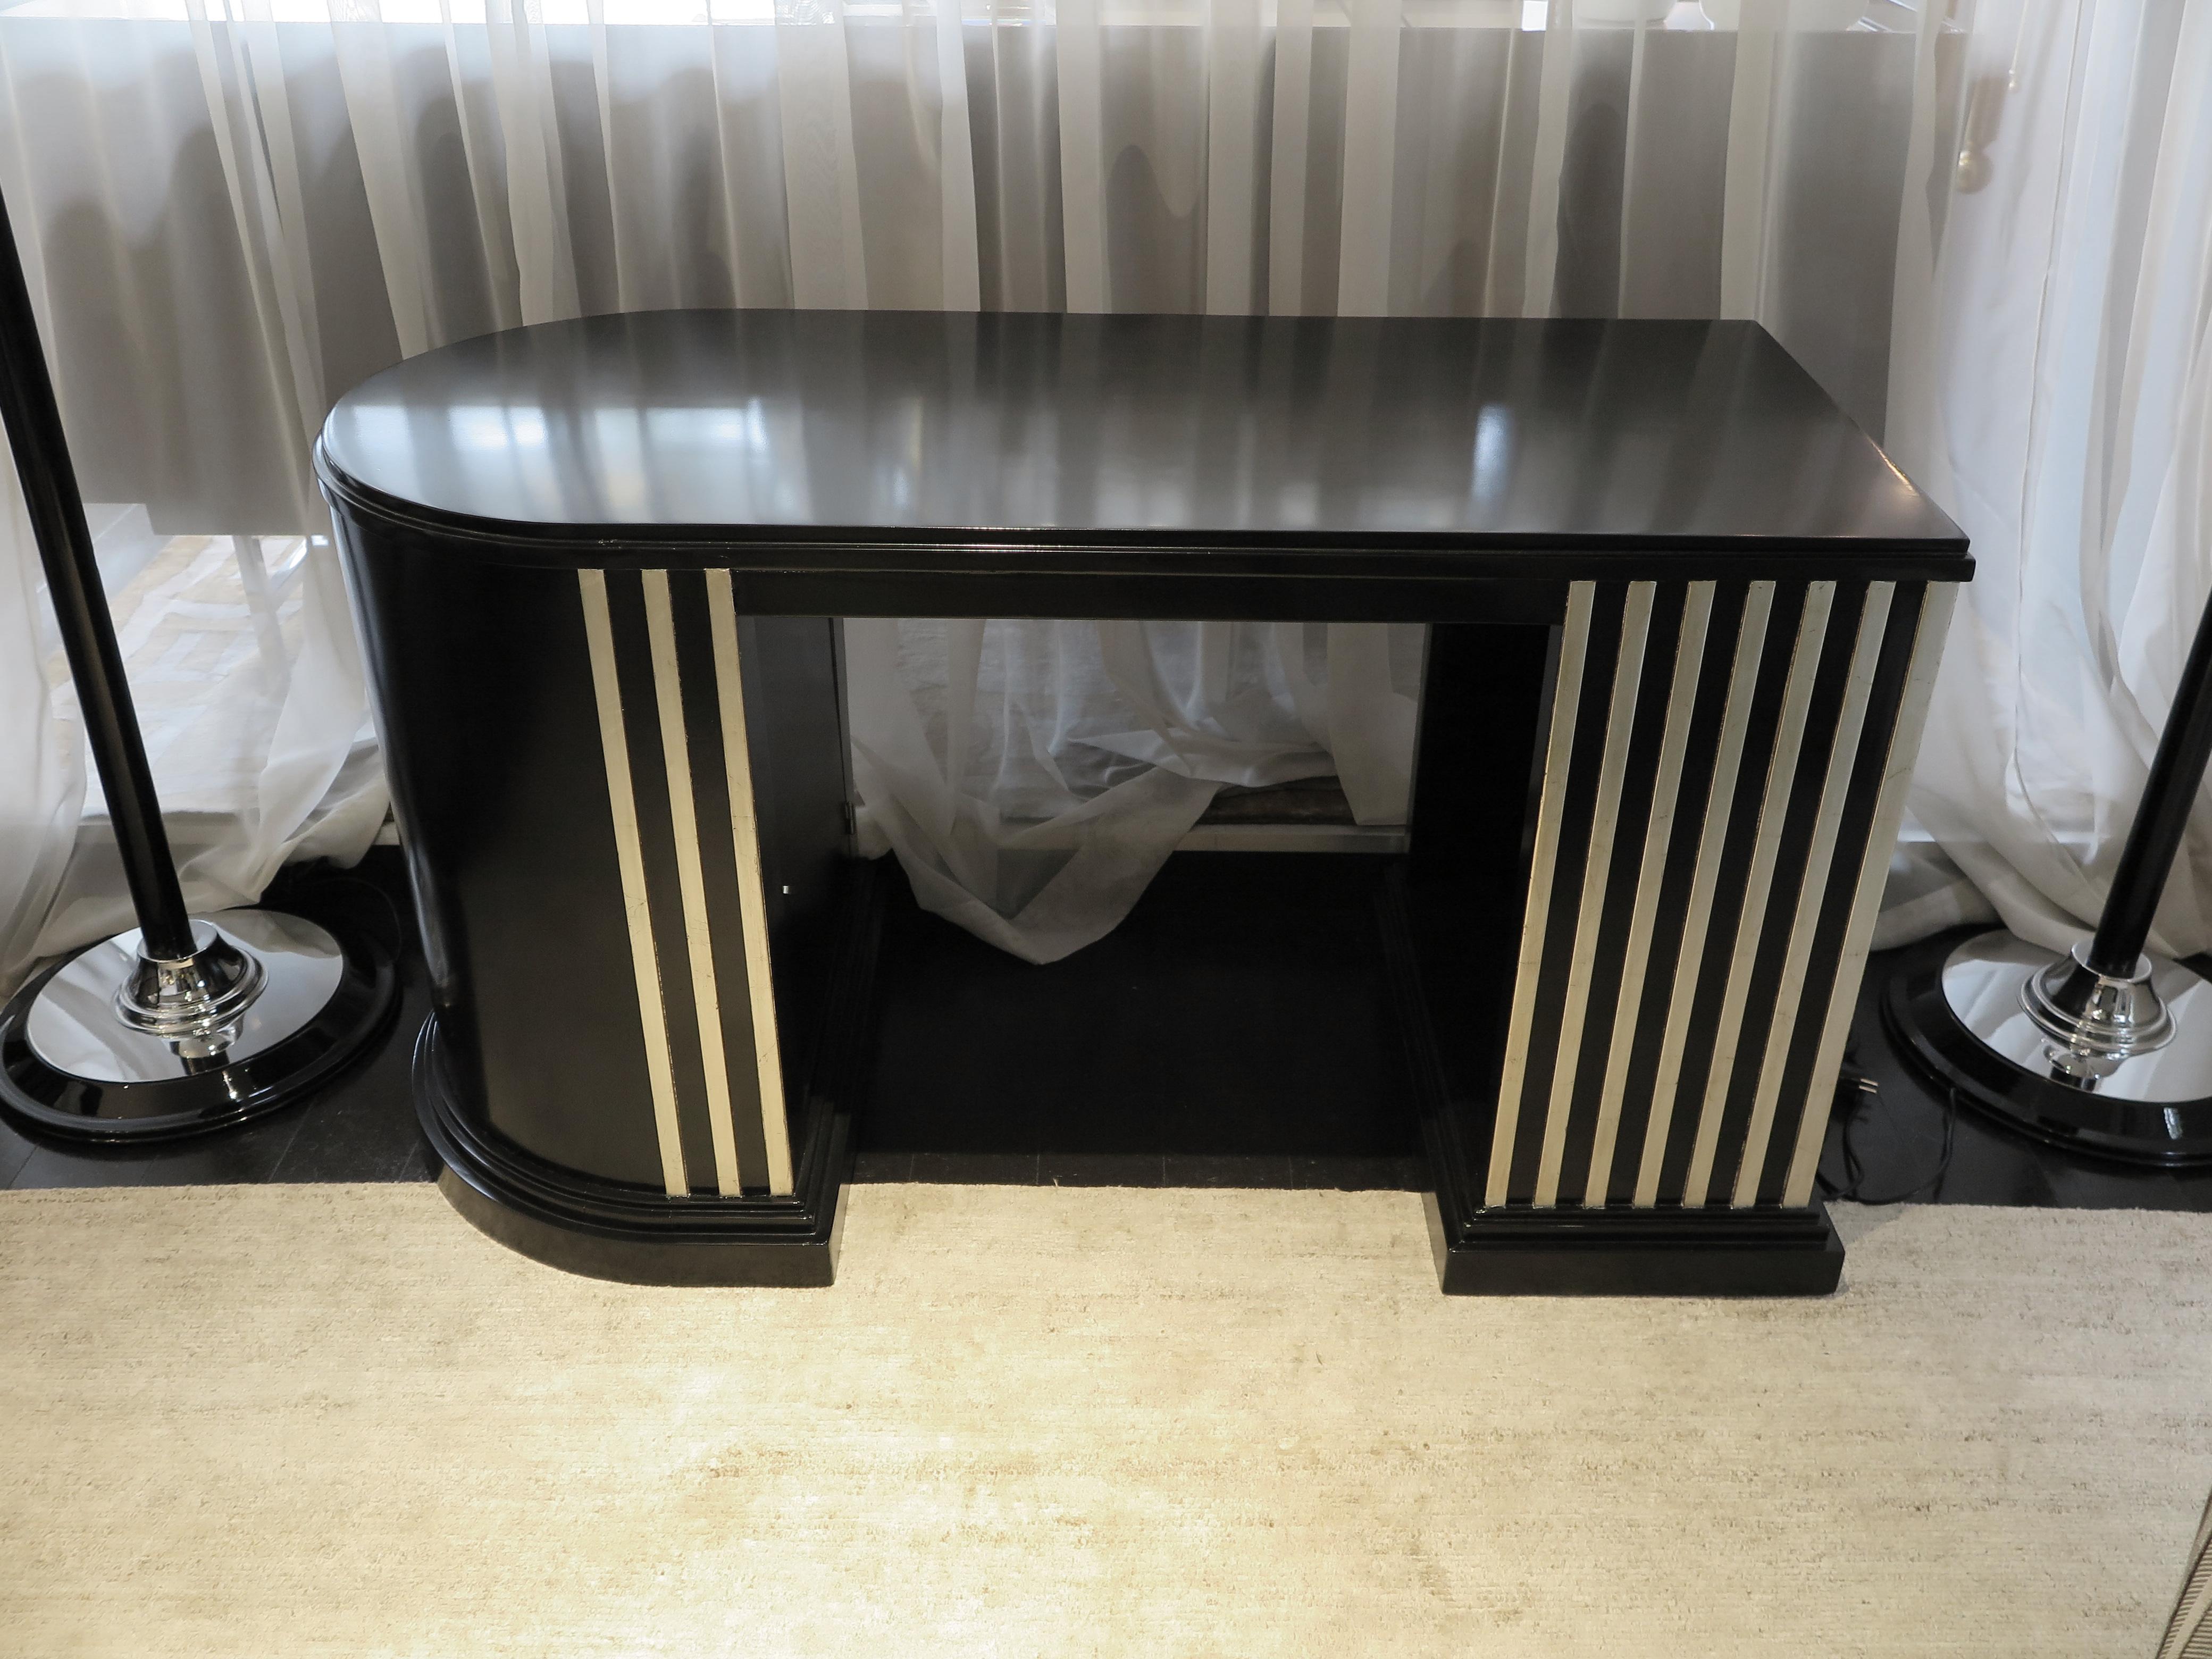 Dieser elegante, schwarz lackierte Schreibtisch zeichnet sich durch sein demilunes Design aus. Zwei Sockel, einer rechteckig und einer geschwungen. Ein verstecktes Türfach befindet sich im Inneren des gebogenen Beins. Lineare Details mit erhabenen